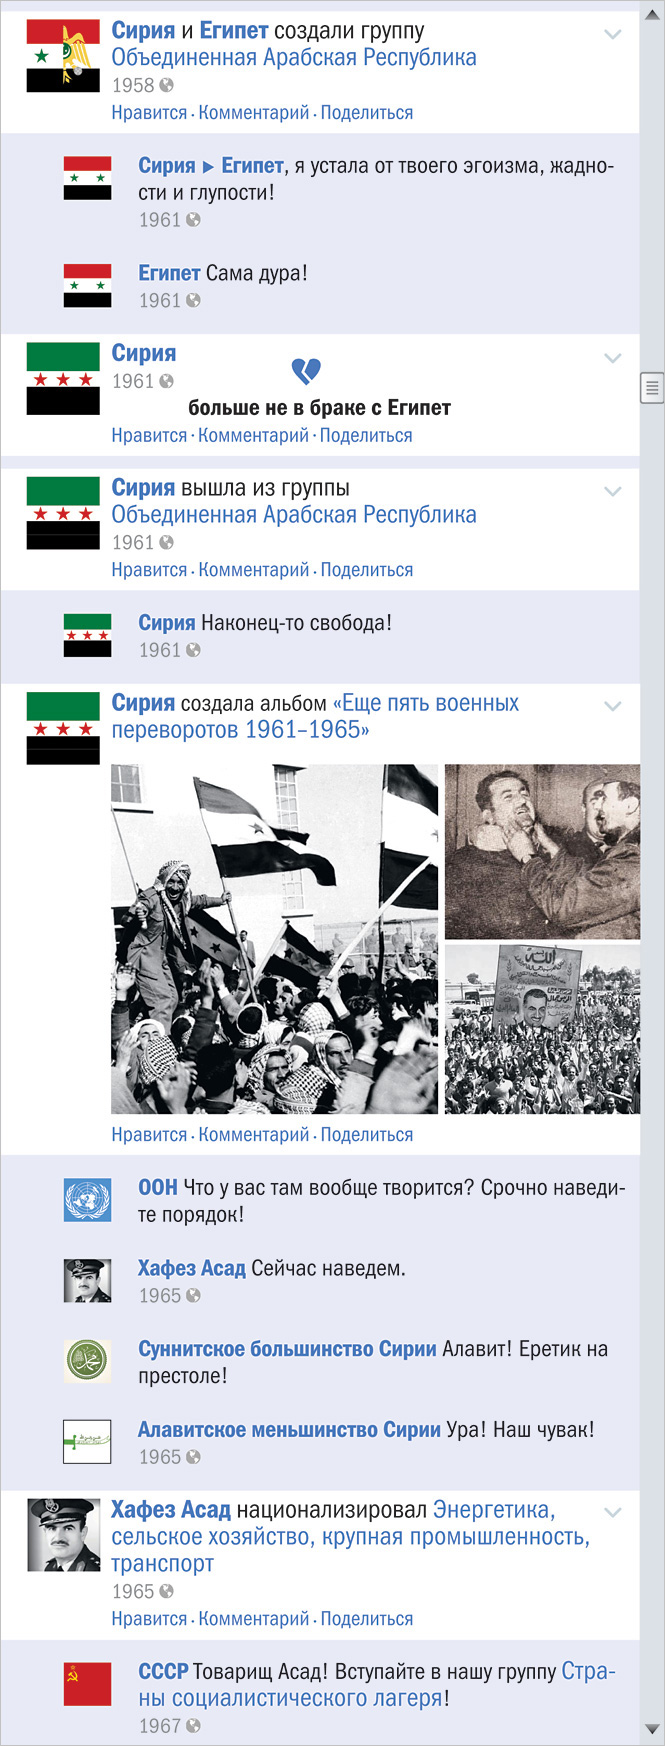 Сирийский конфликт в виде ленты Фейсбука